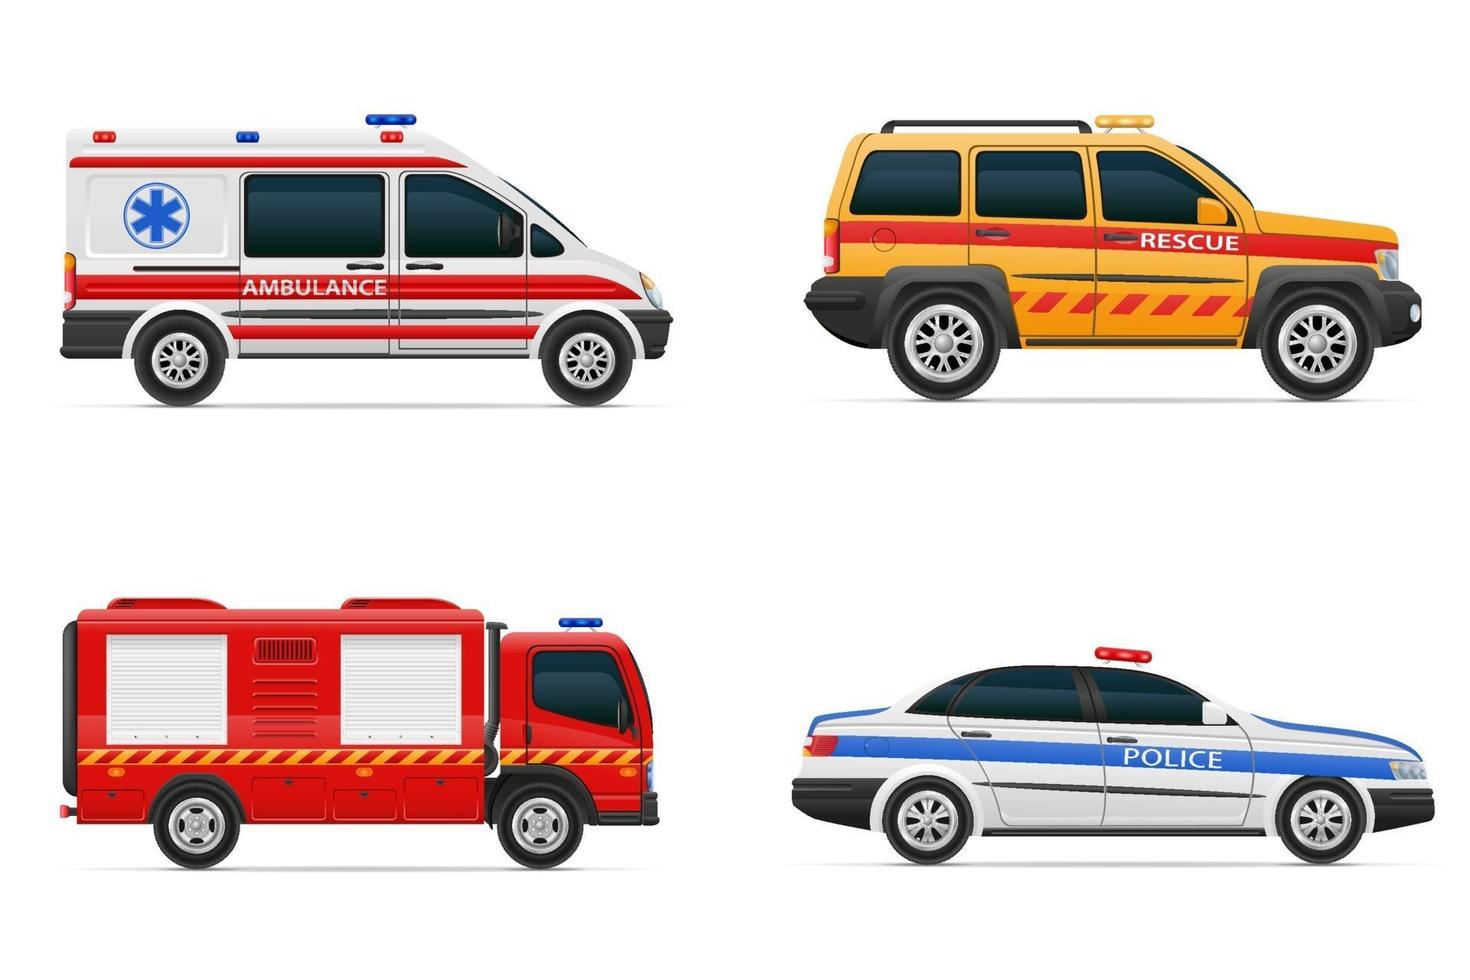 veículos de vários serviços de emergência e resgate ilustração vetorial de carro isolada no fundo branco vetor